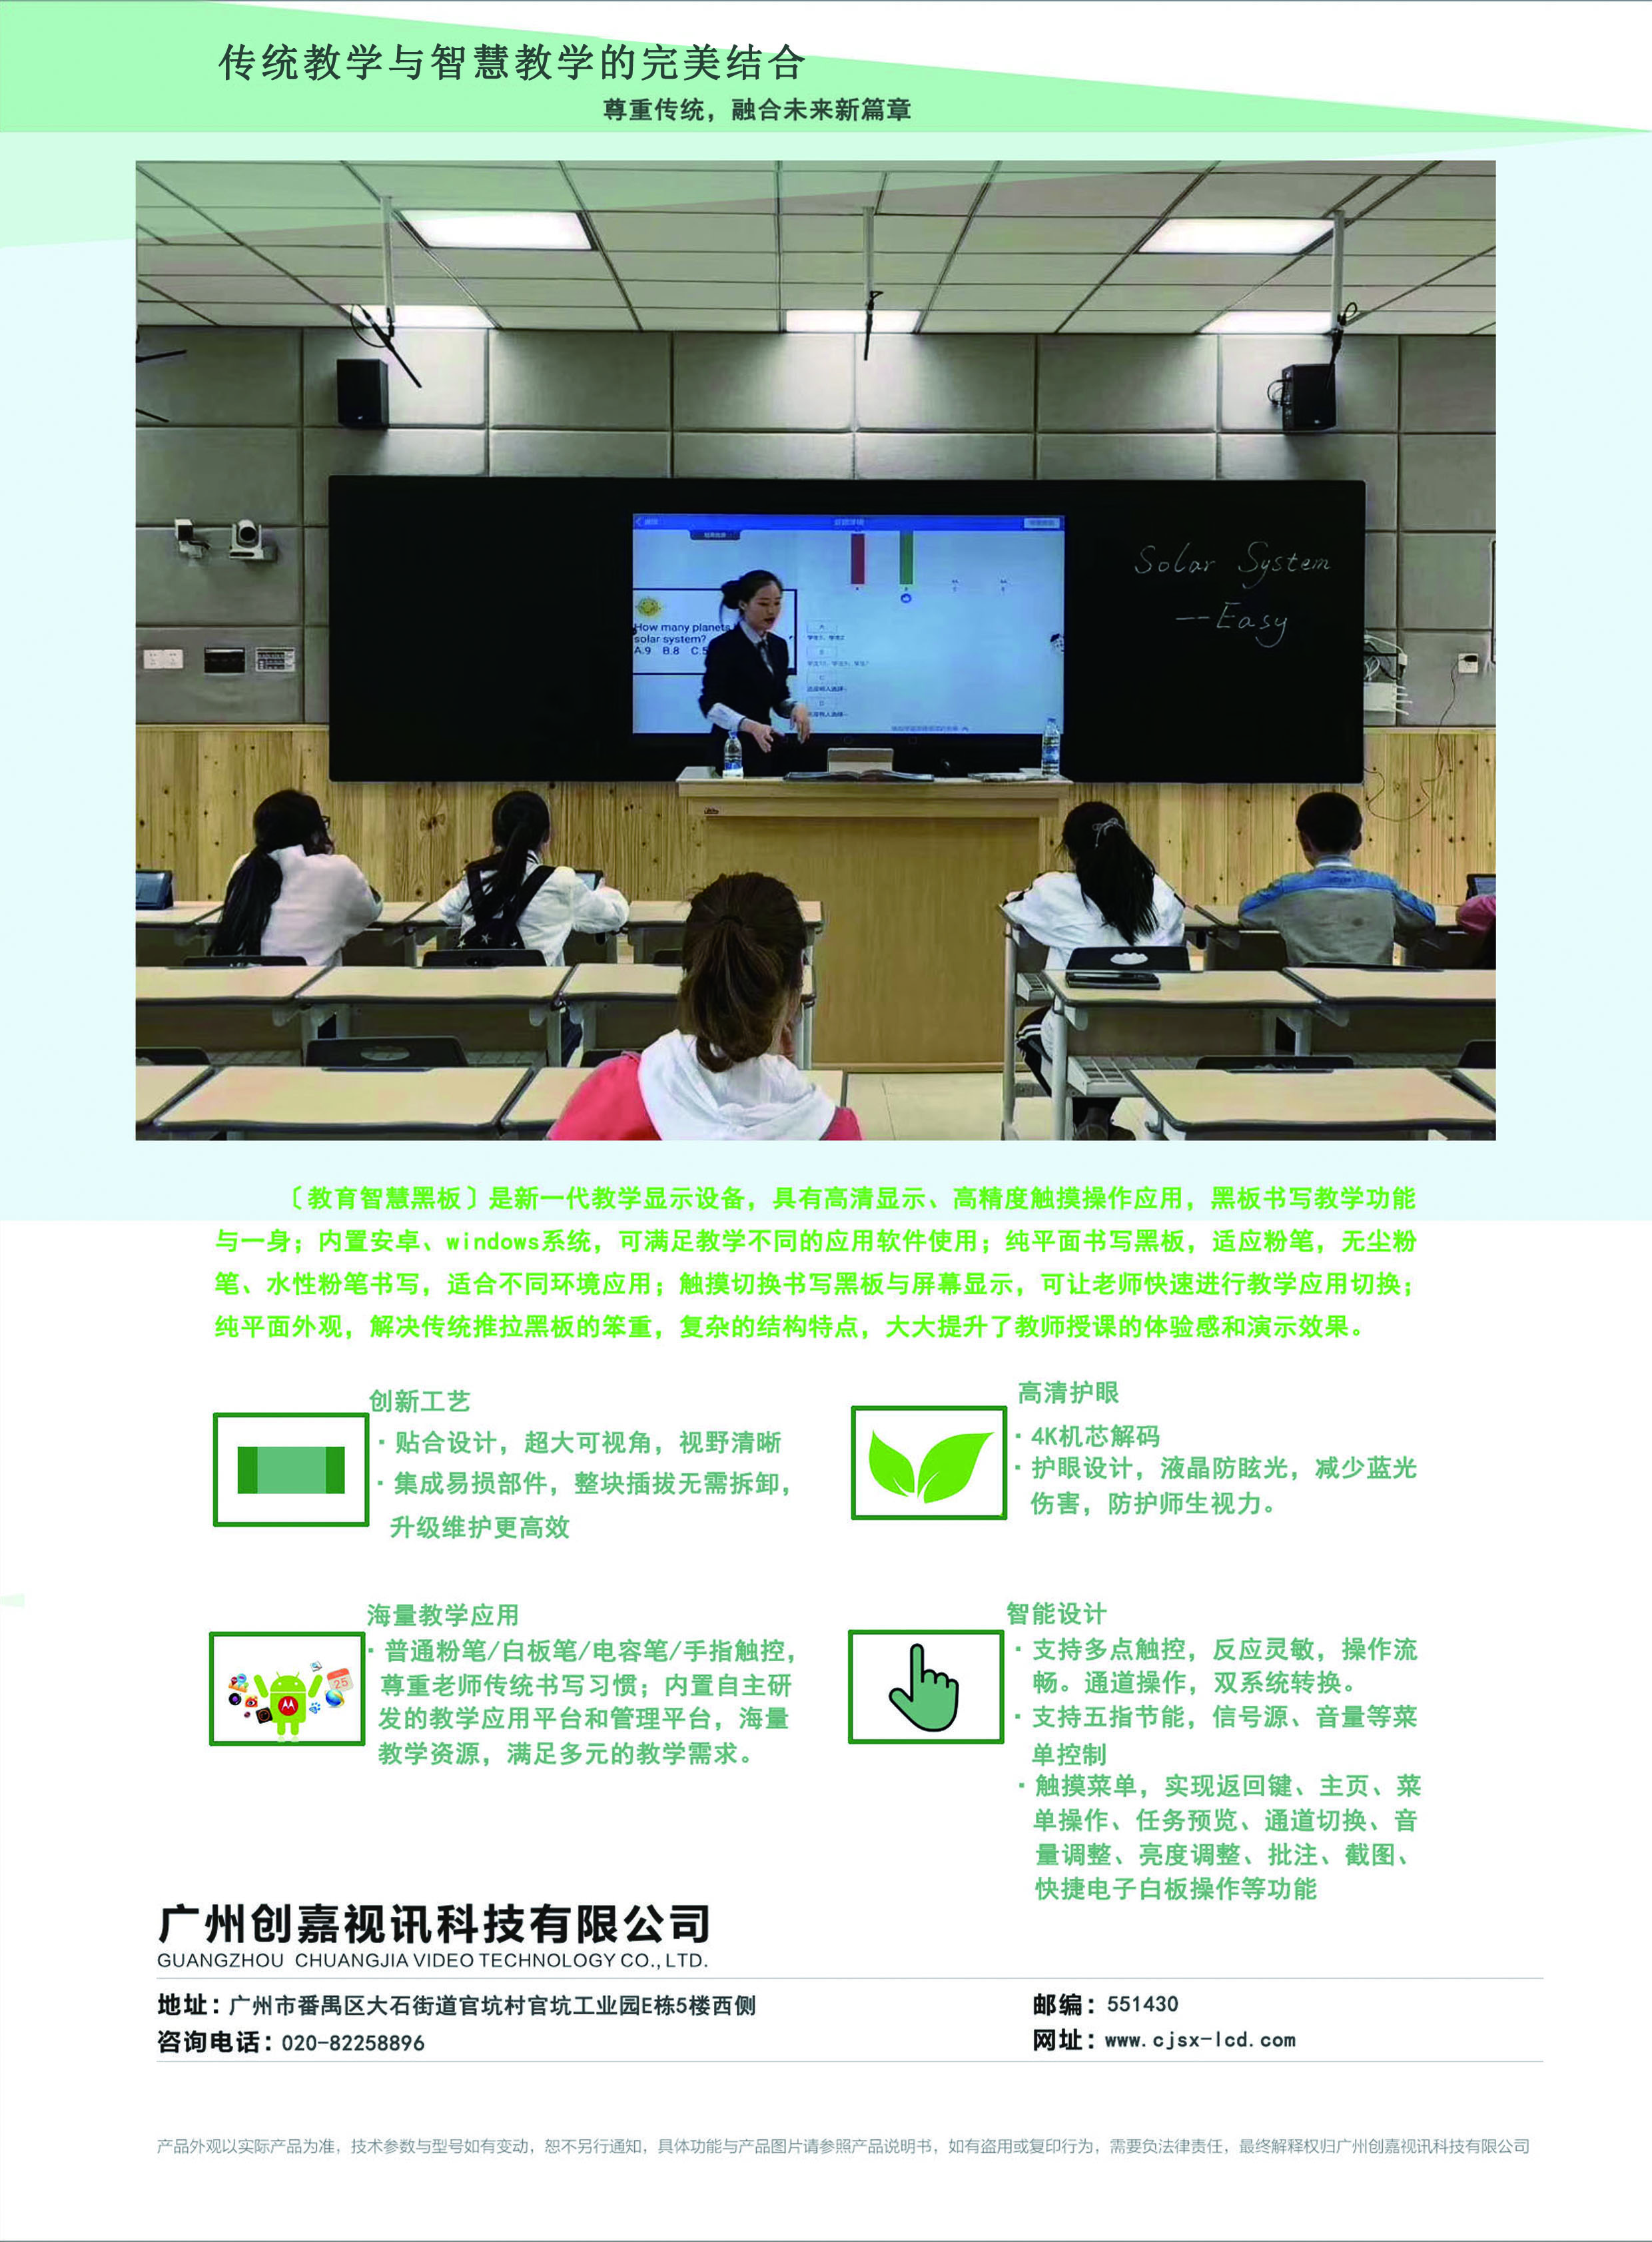 校园黑板、智慧黑板、纳米黑板、教育云平台、教育触摸一体机【广州创嘉视讯科技有限公司】